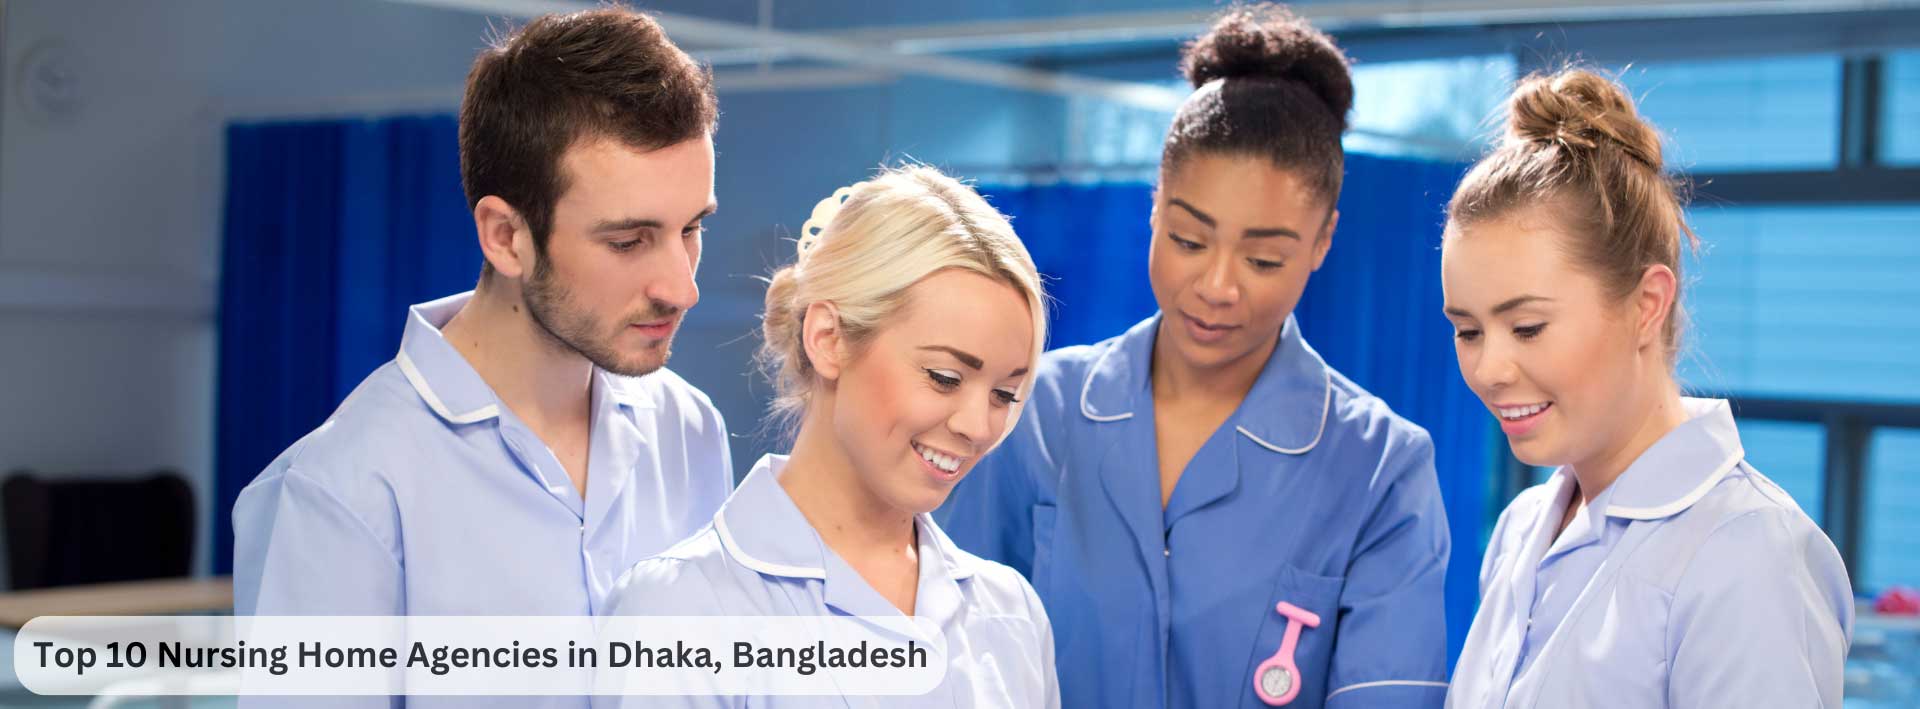 Top 10 Nursing Home Agencies in Dhaka